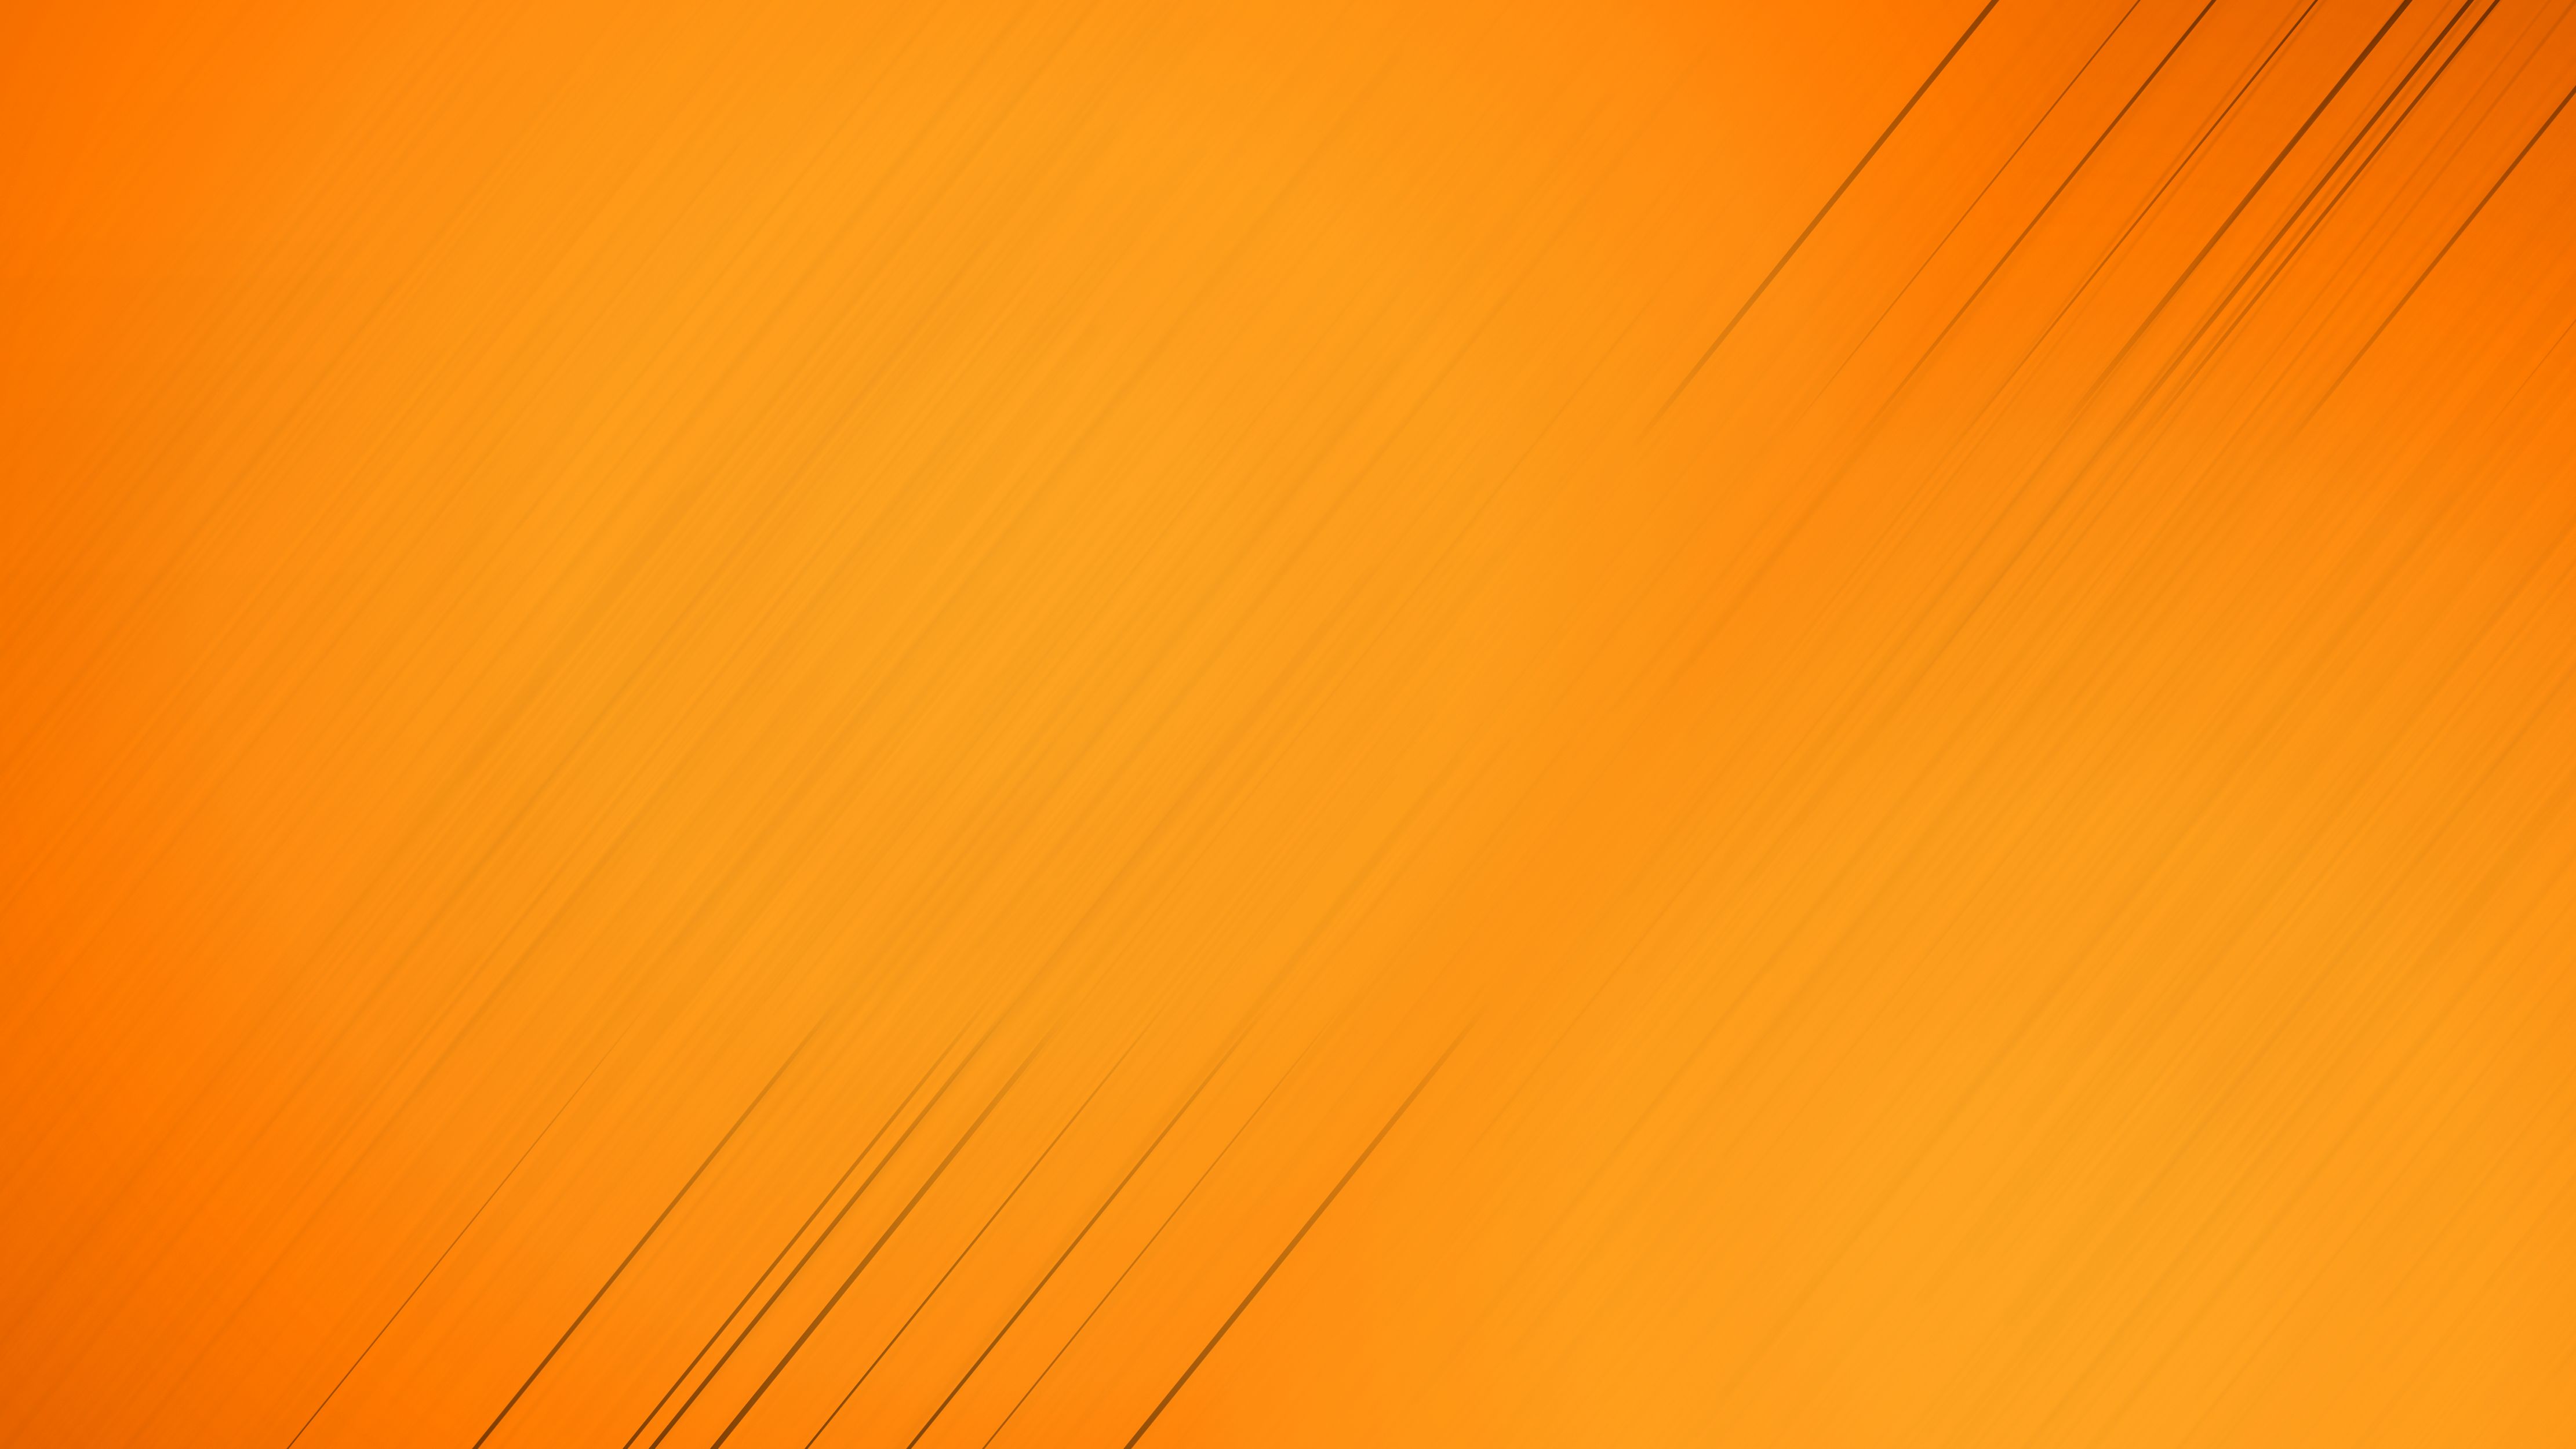 941770 скачать обои полосы, абстрактные, апельсин, оранжевый цвет) - заставки и картинки бесплатно